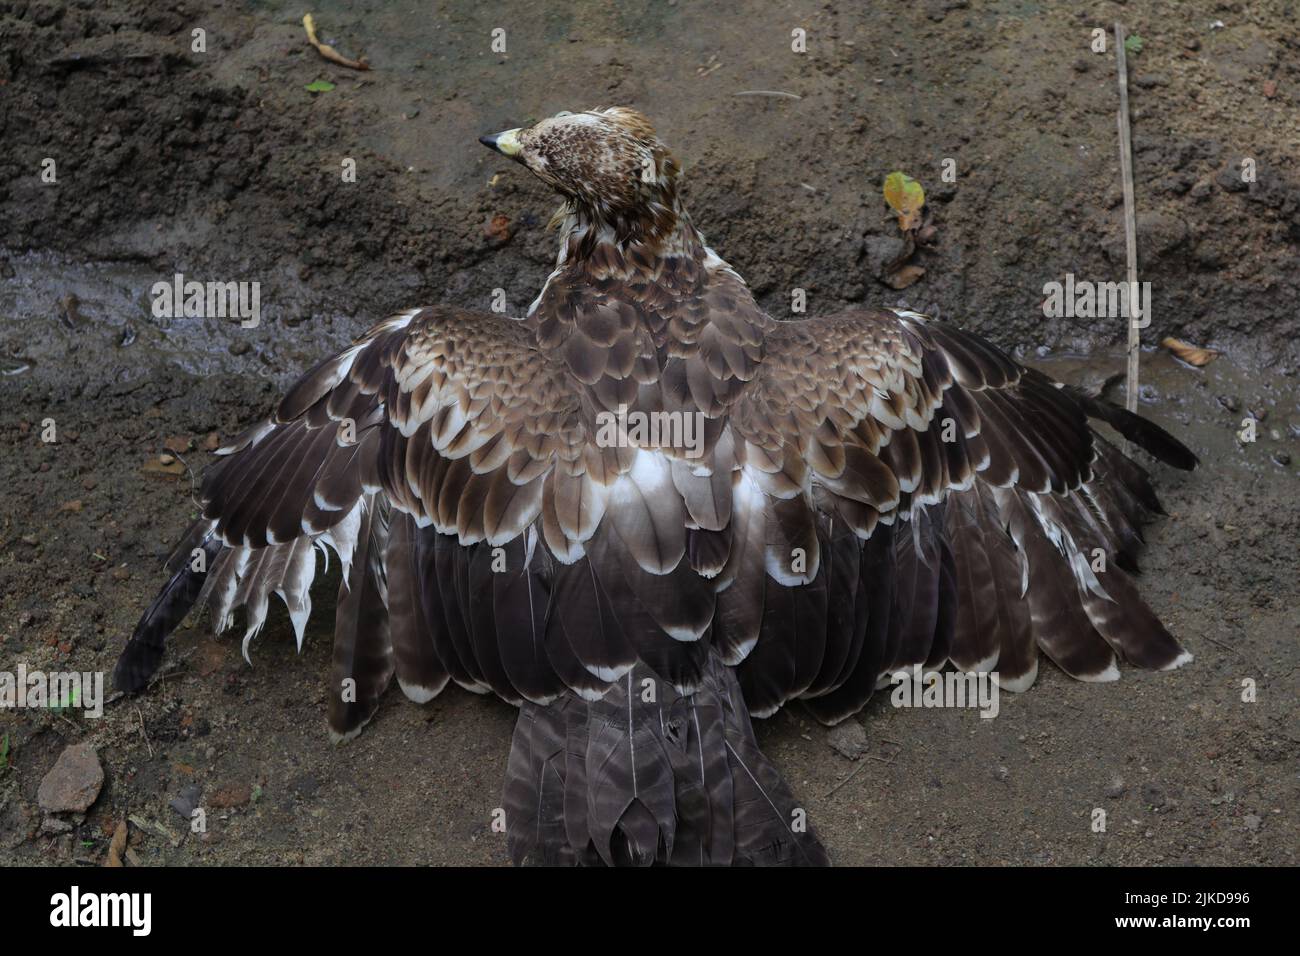 Un'aquila di falco crestato spalma le sue ali dopo il bagno e cerca di asciugare le piume il più presto possibile, vista dal retro Foto Stock